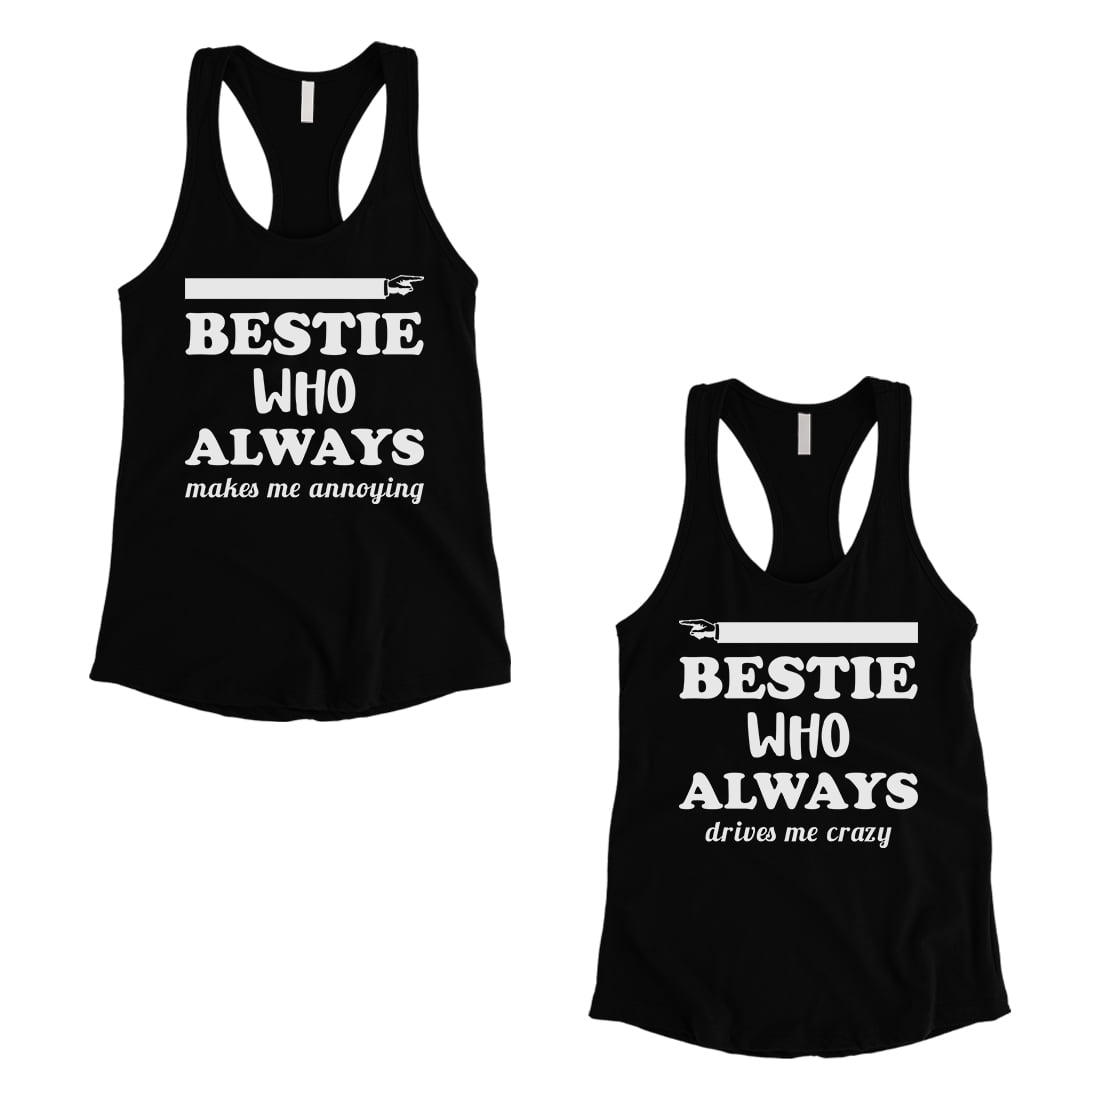 Details about  / Tall Short Friend Best Friend Gift Shirts Womens Matching Tank Tops